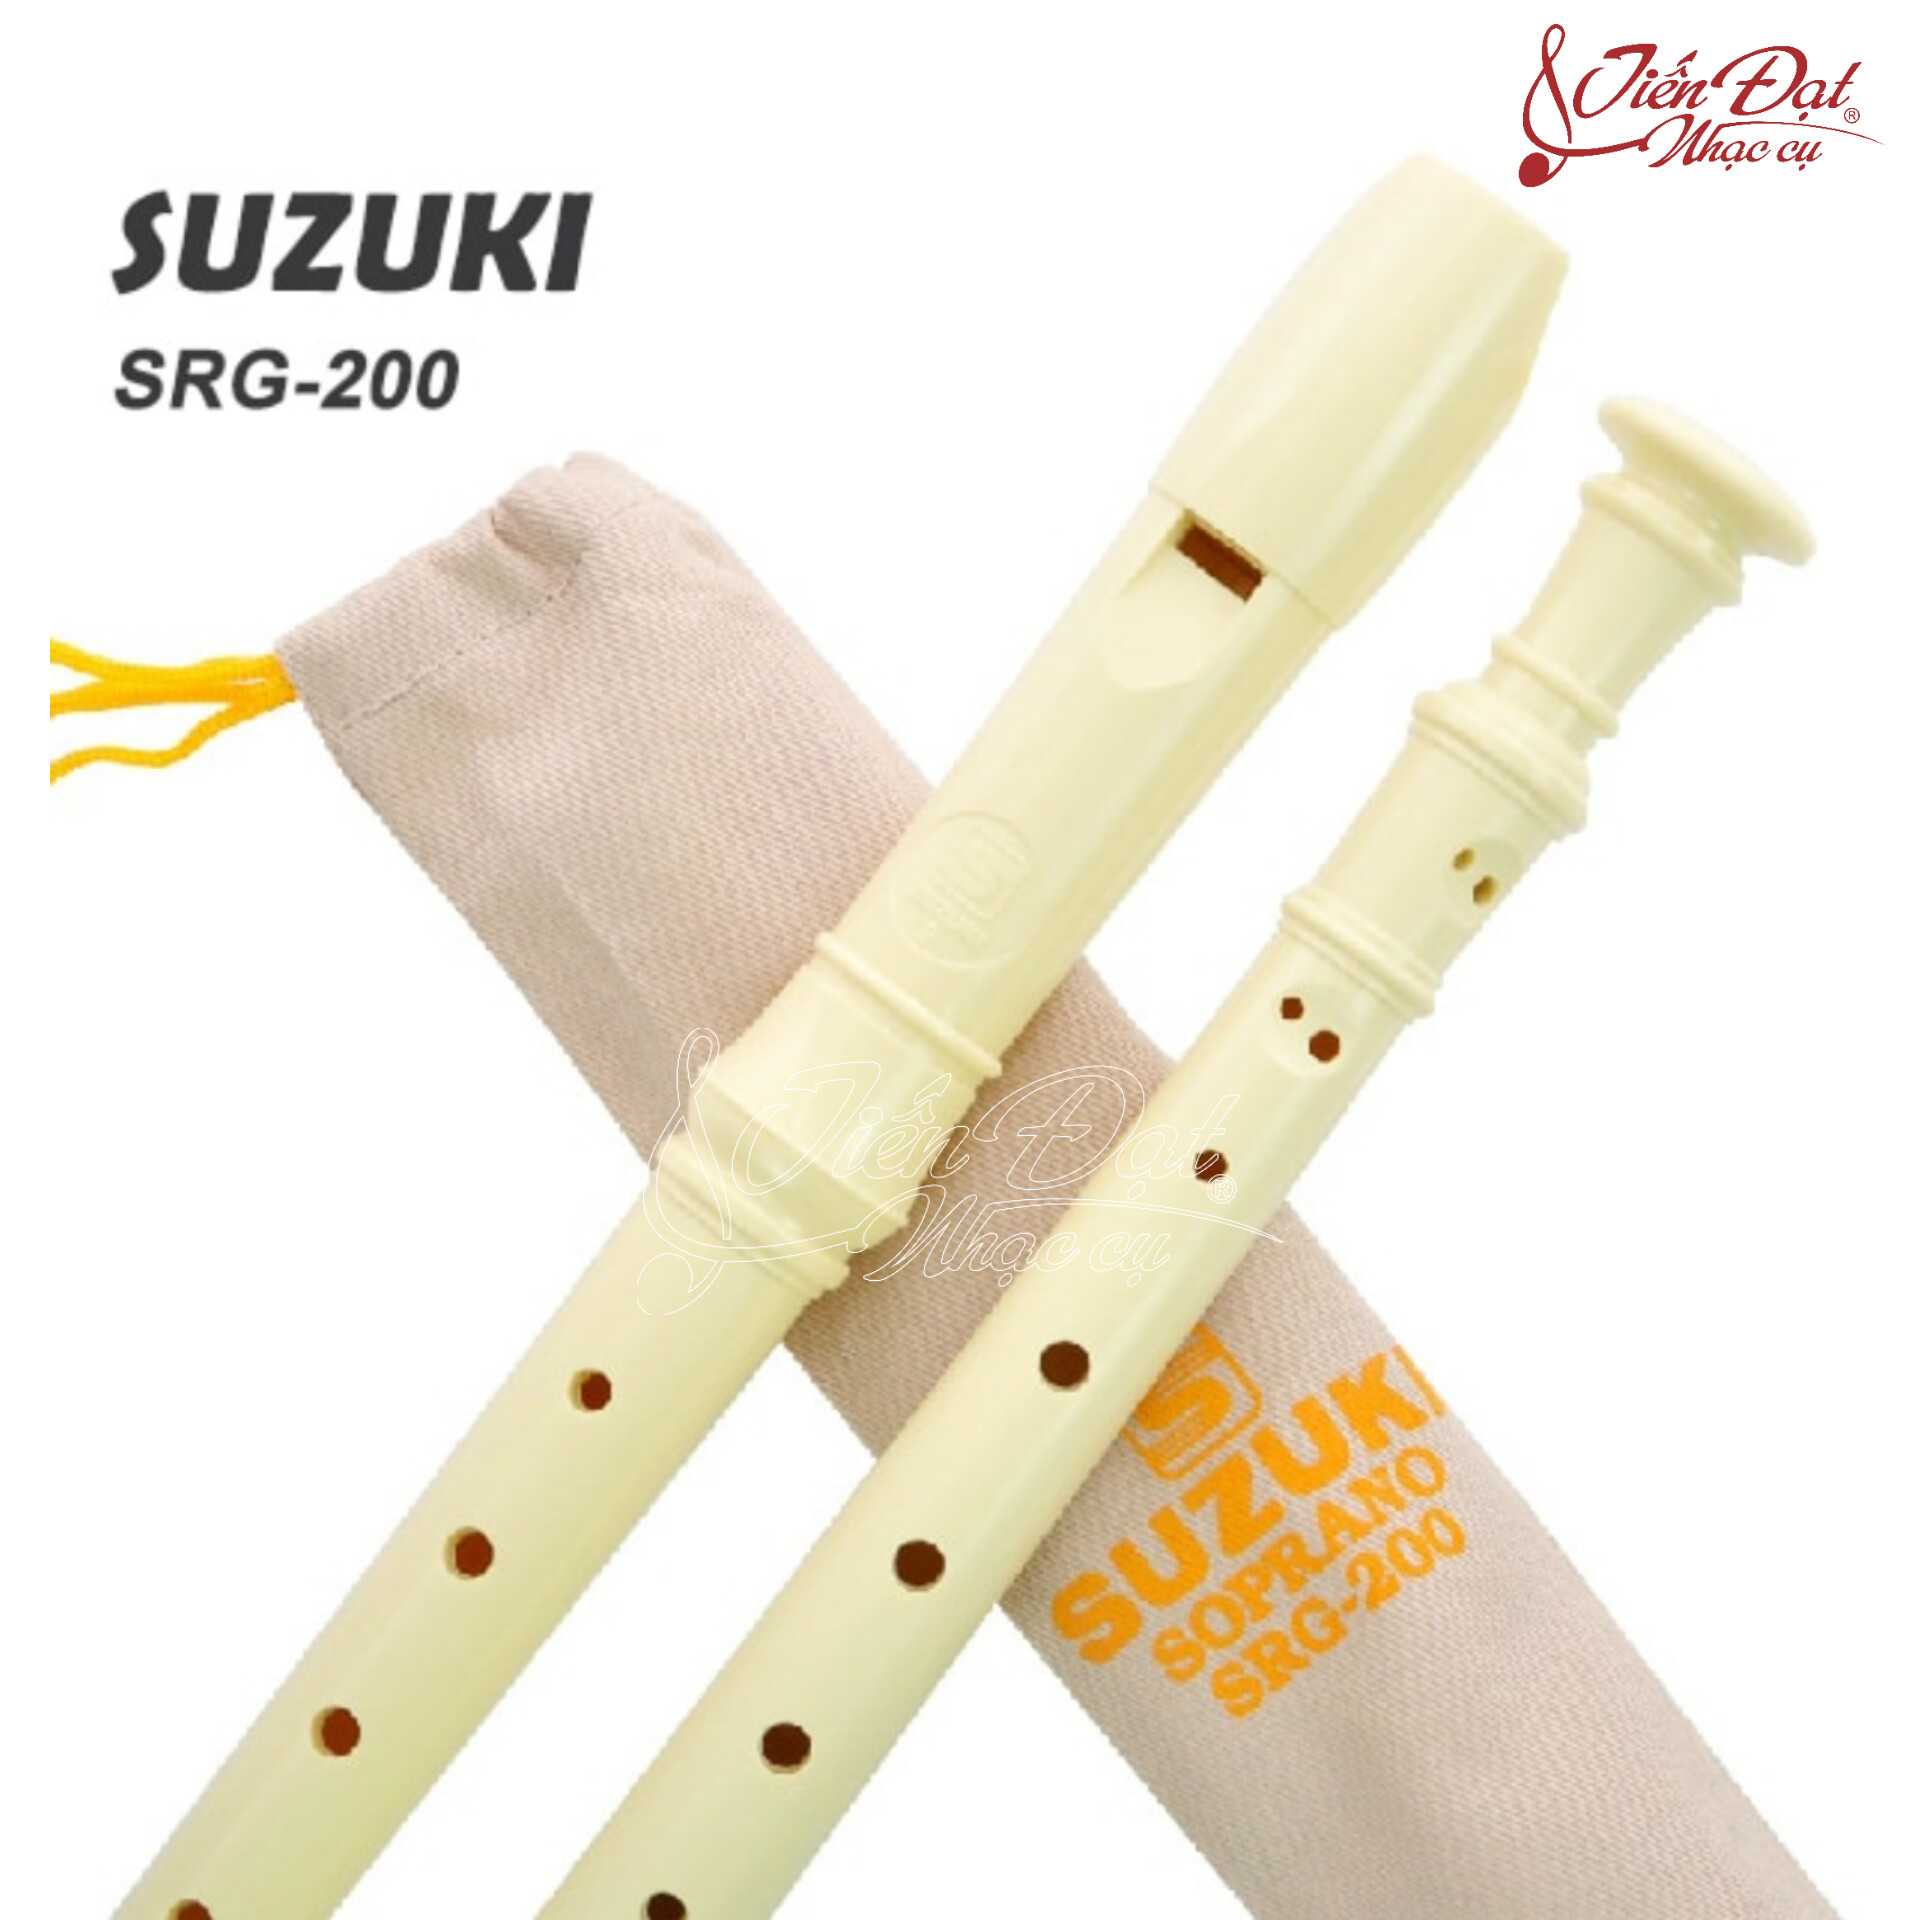 Sáo Tiêu Recorder SUZUKI SRG-200, Tone G, Kèm Túi Vải Đựng